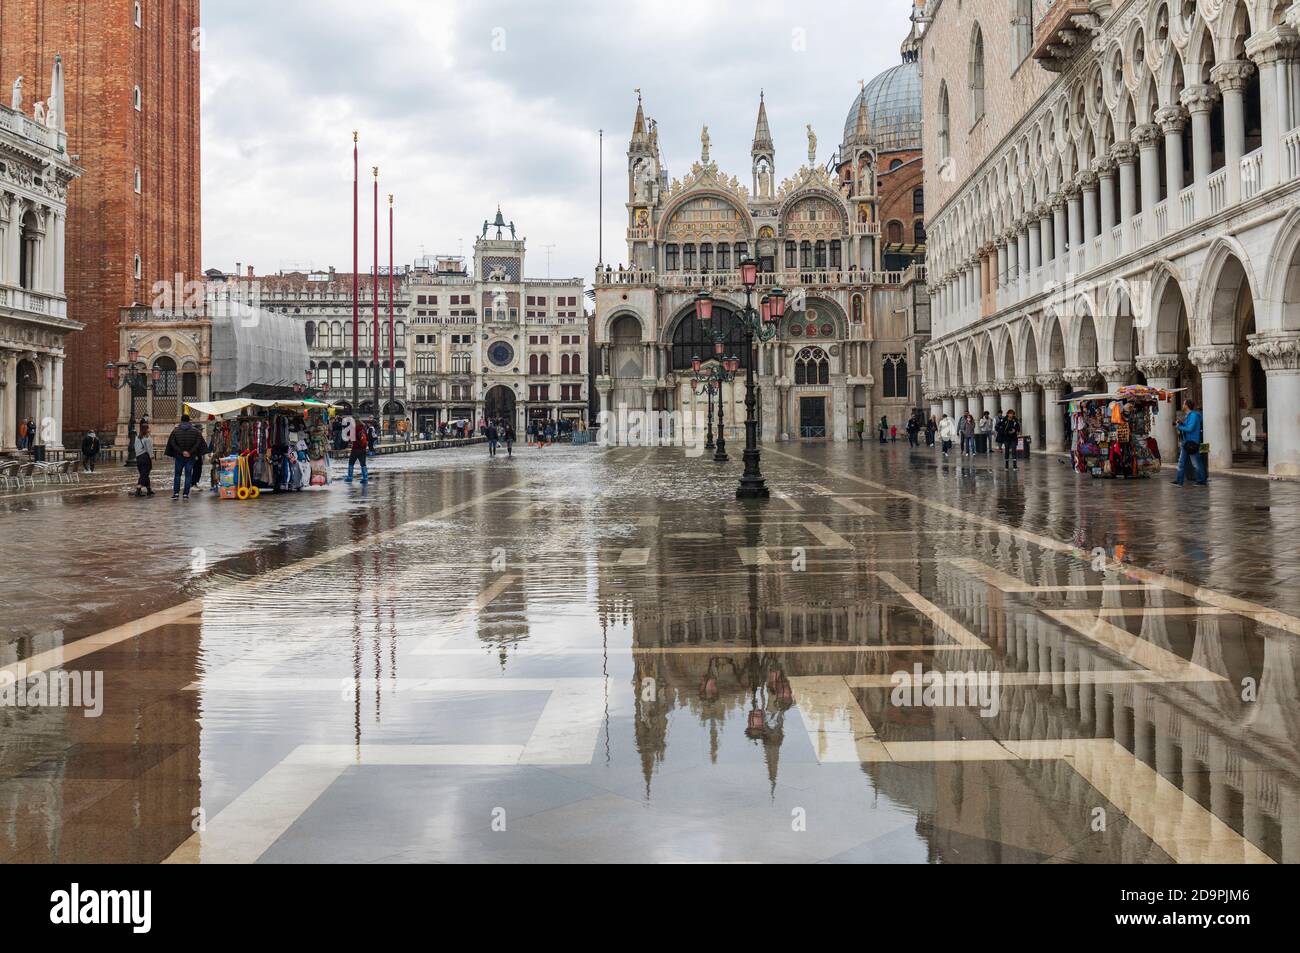 Acqua alta causa alluvioni in Piazza San Marco. Basilica di San Marco e Palazzo Ducale riflessi nell'acqua. Piazza San Marco, Venezia, Italia Foto Stock